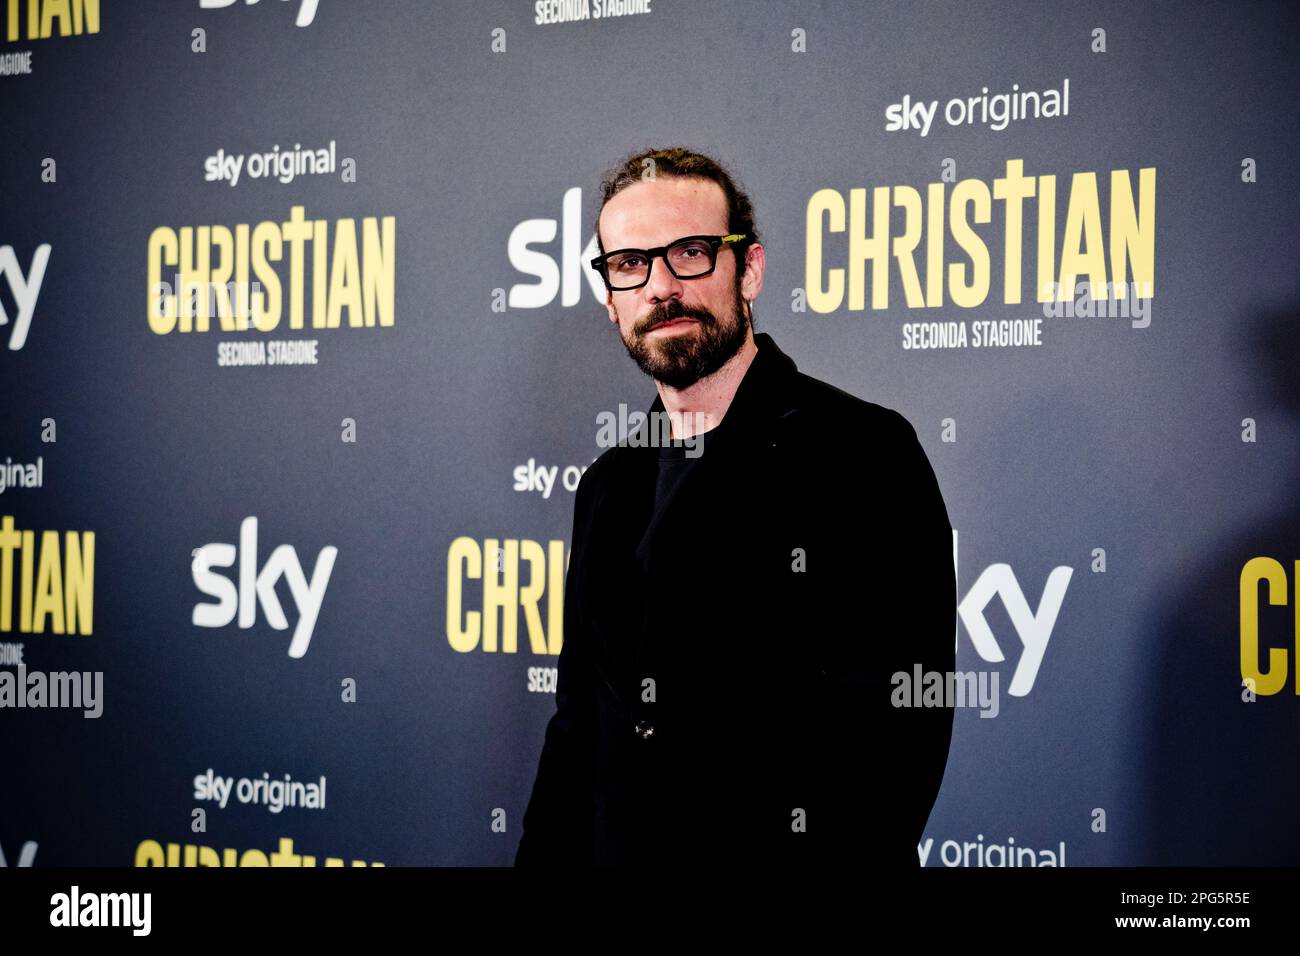 Rome, Italy, 20th March 2023, Francesco Montanari attends the premiere of 'Christian - seconda stagione' at Cinema Barberini (Photo credits: Giovanna Stock Photo